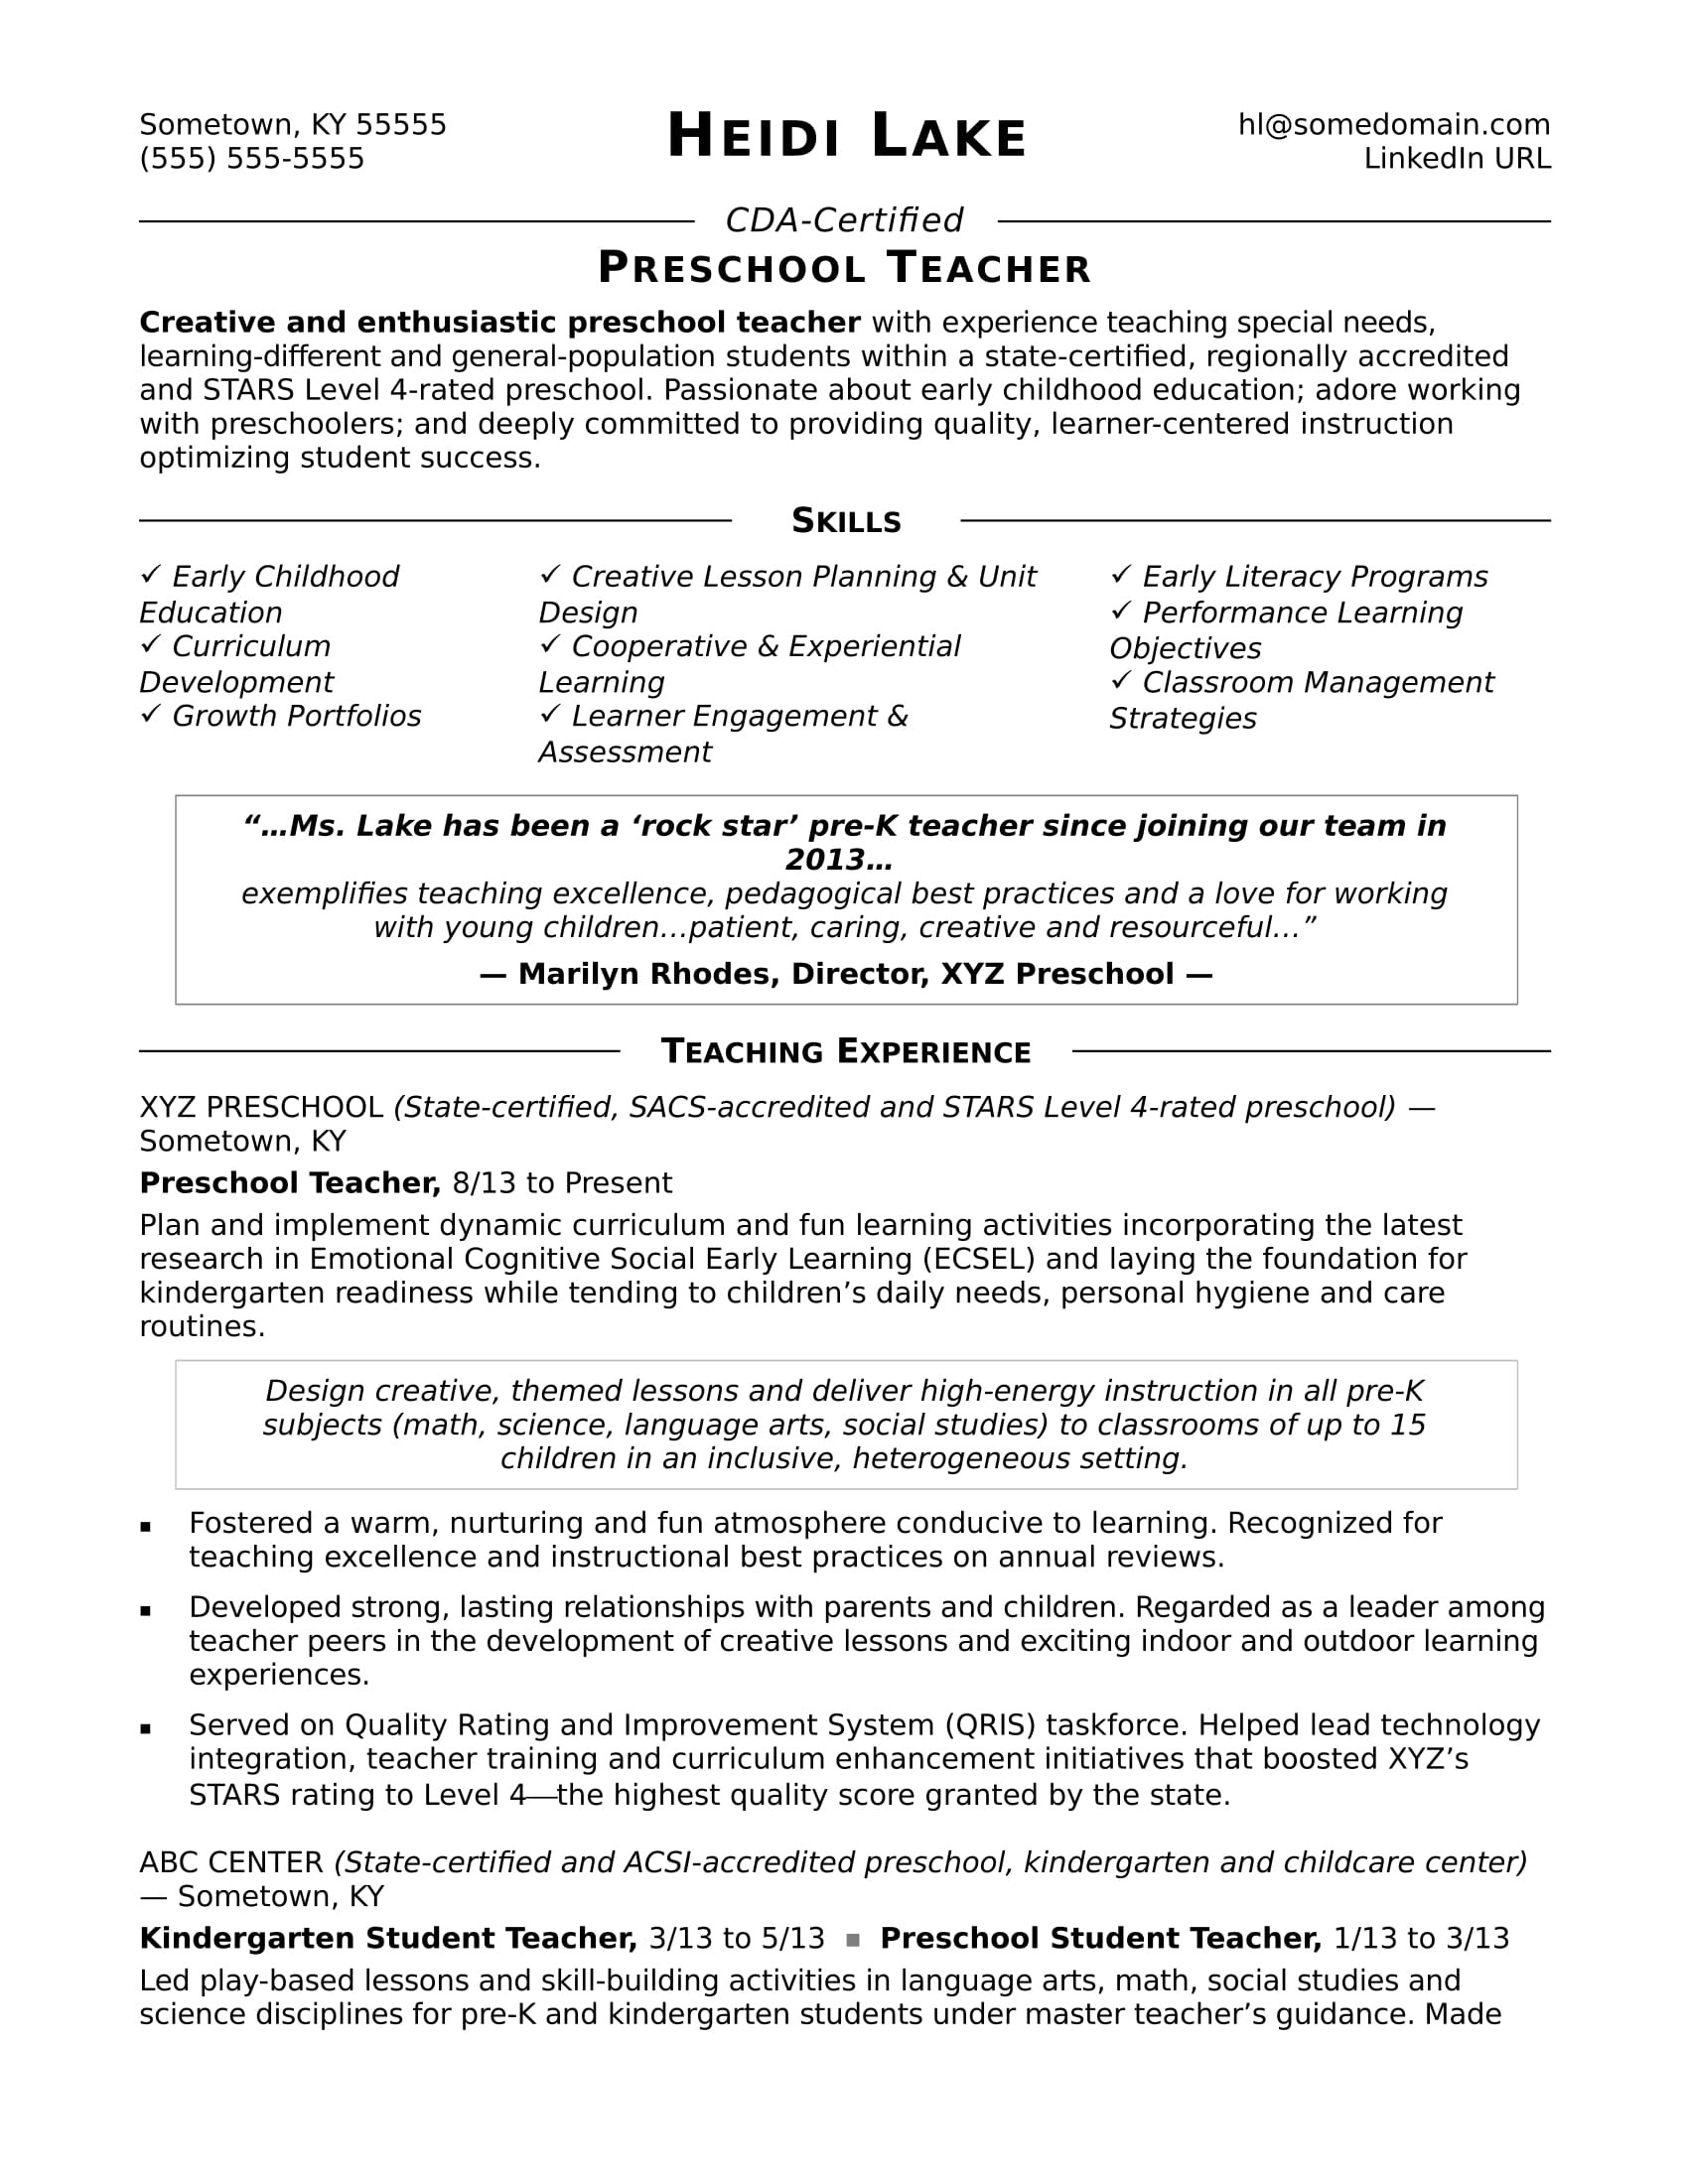 Sample Resume for Kindergarten Teacher assistant Preschool Teacher Resume Sample Monster.com